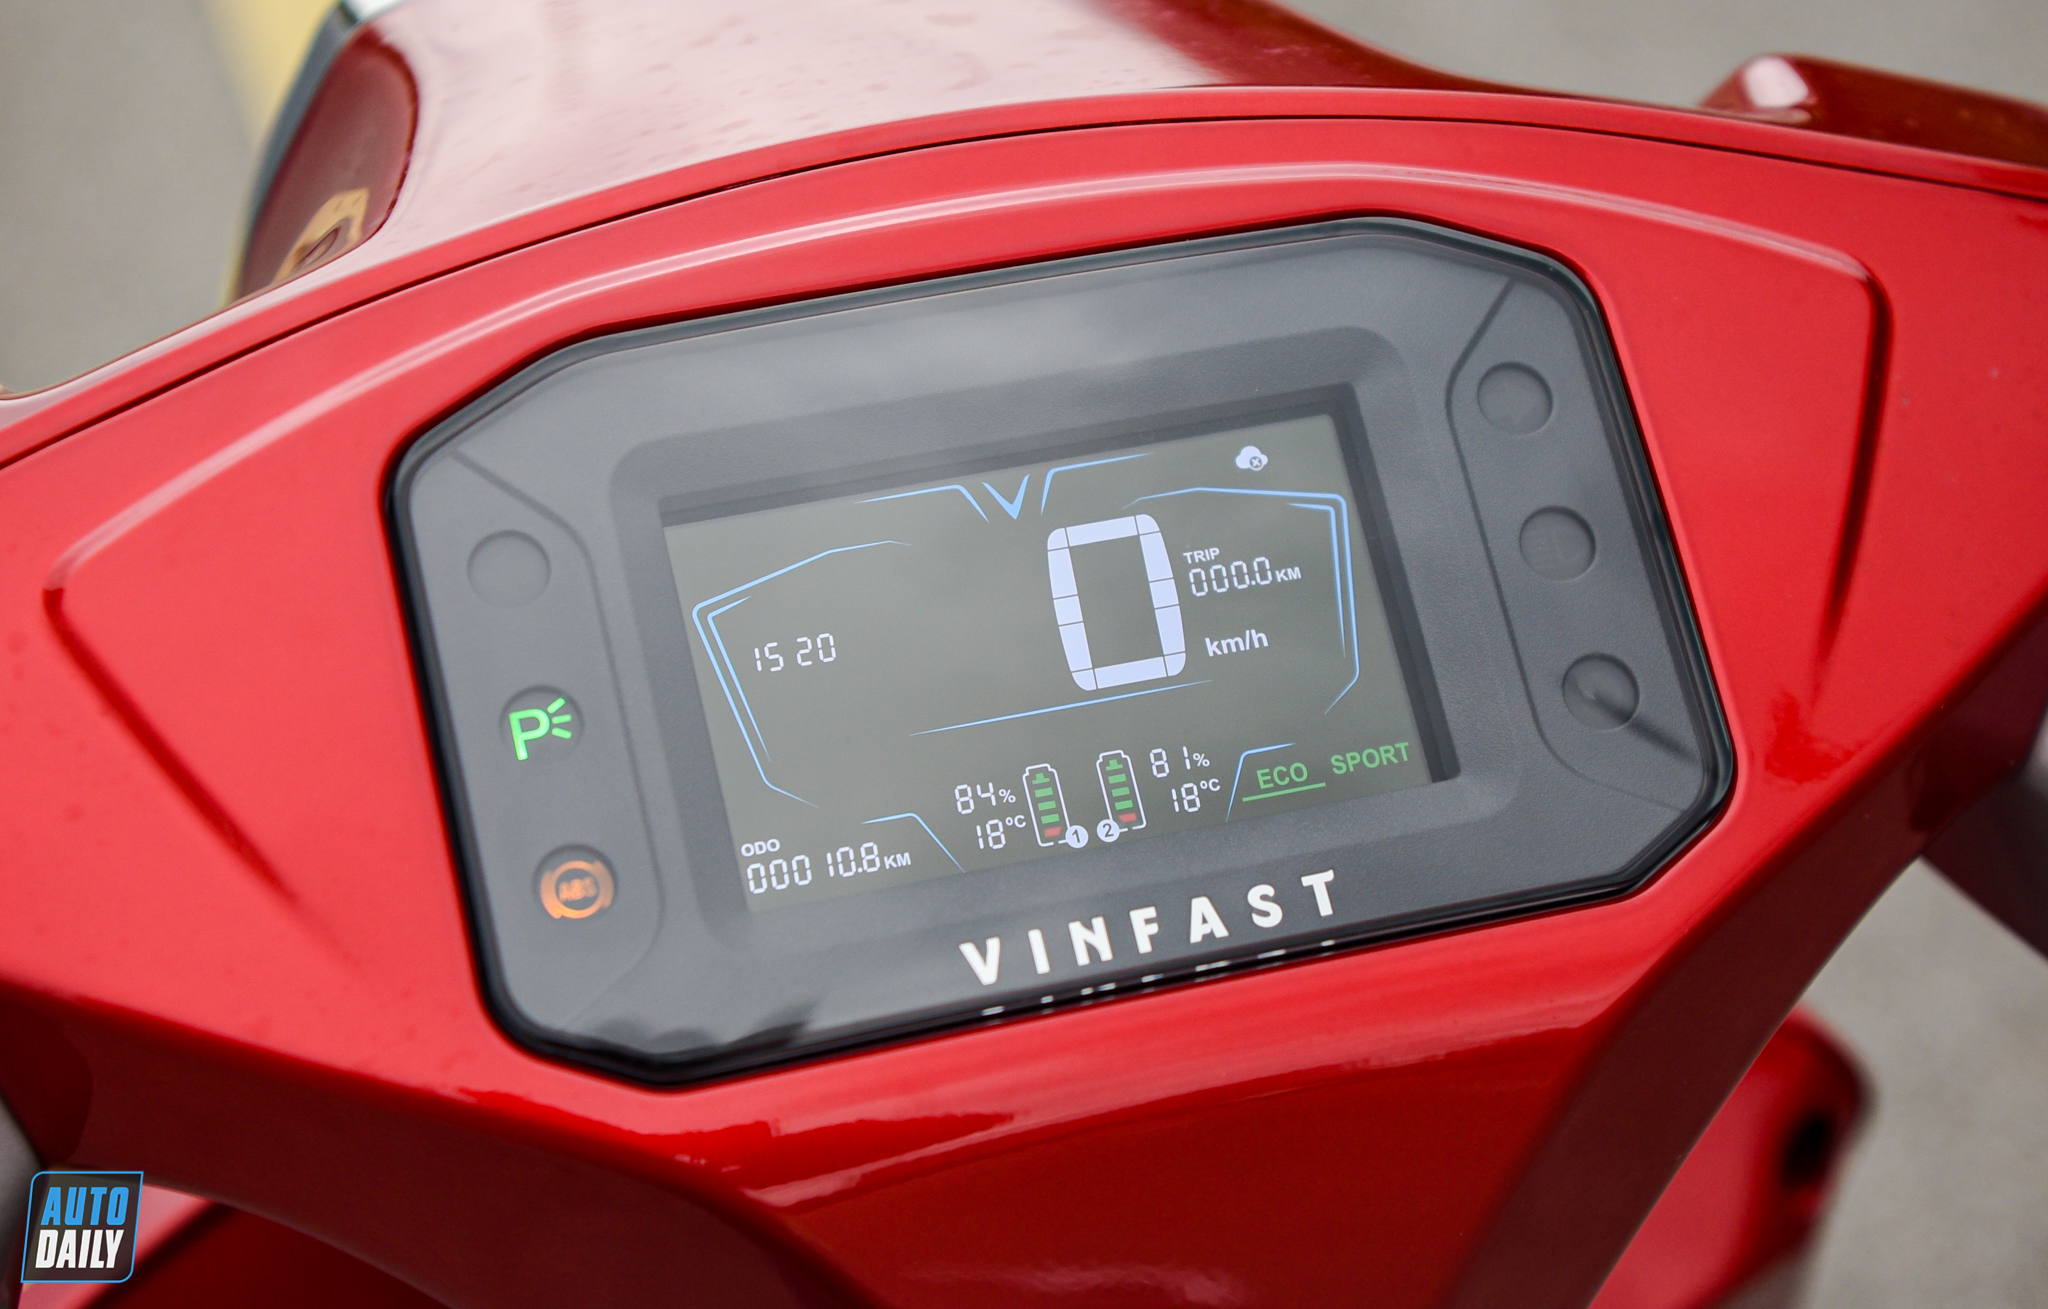 Chi tiết xe điện cao cấp cho nữ VinFast Vento giá 56,35 triệu đồng adt-4822.jpg